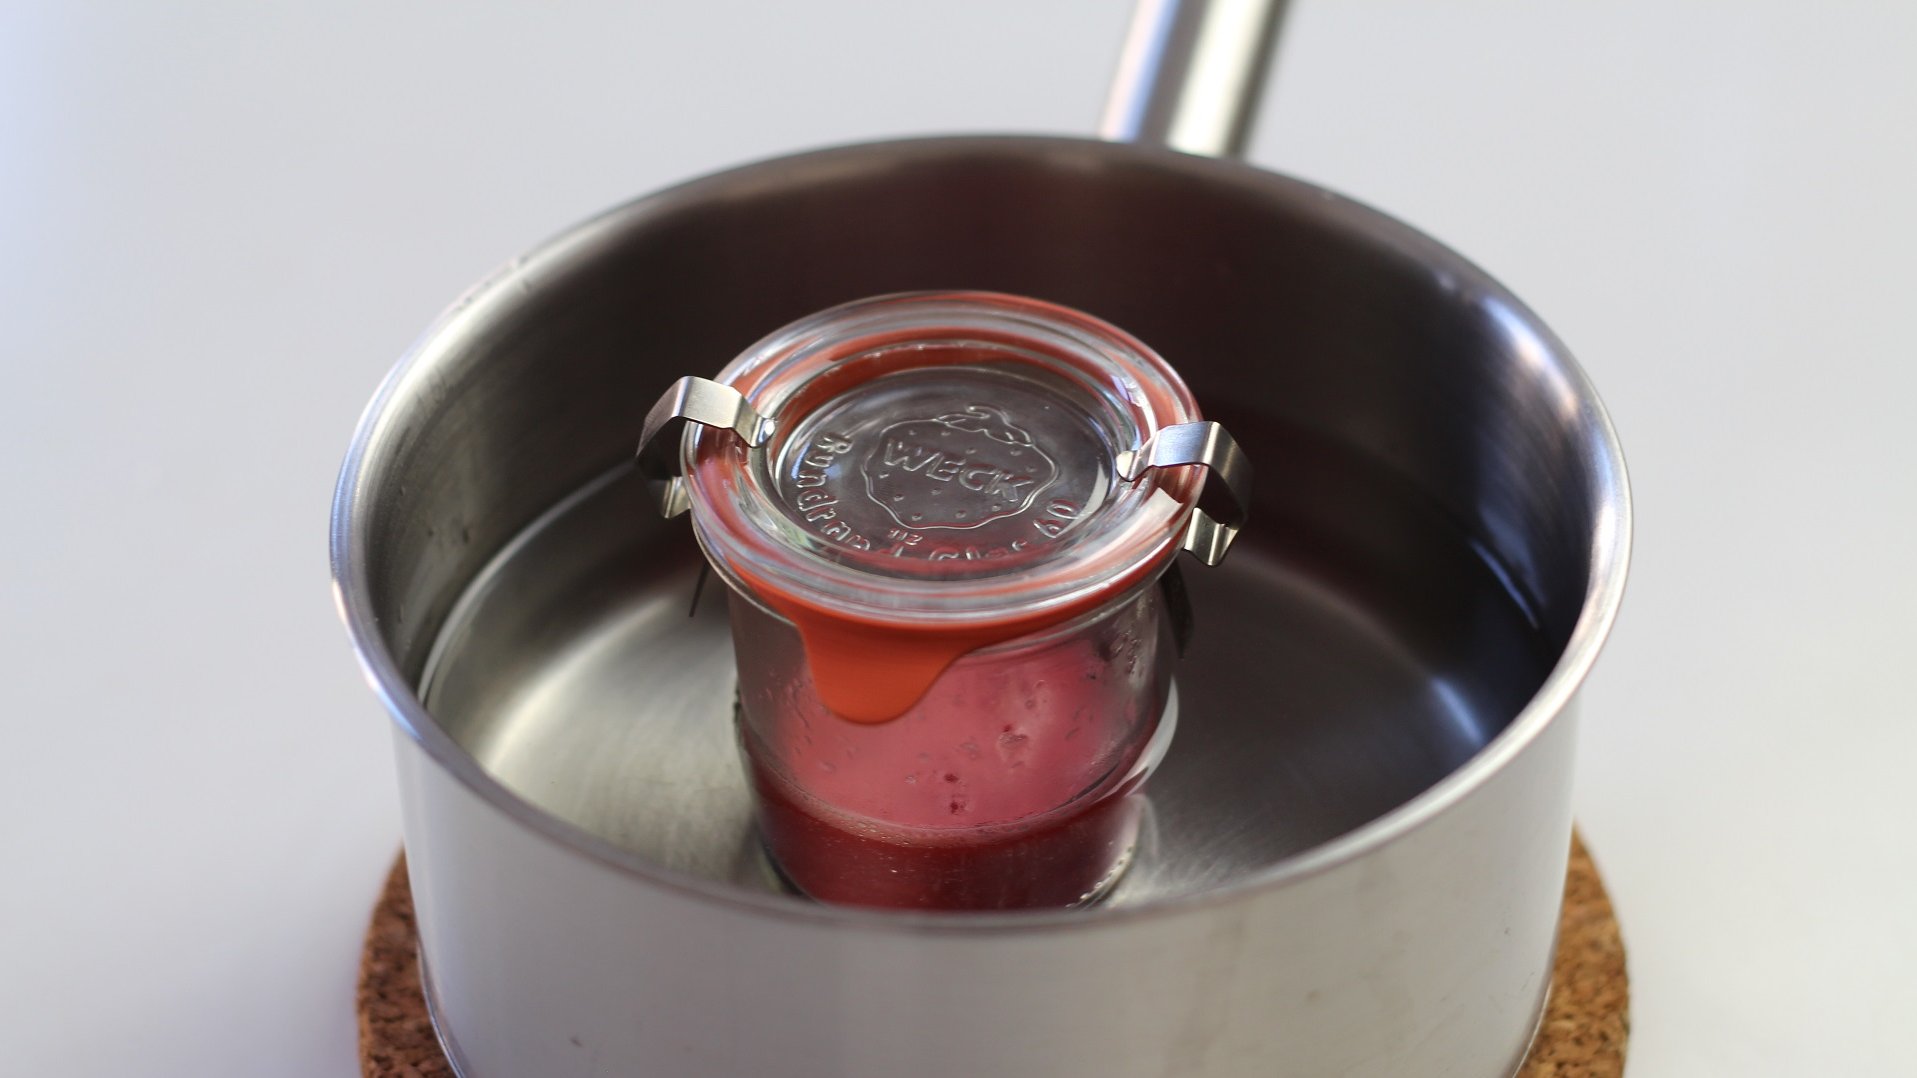 Ein Glas mit einem roten Inhalt in einem mit Wasser gefüllten Kochtopf.